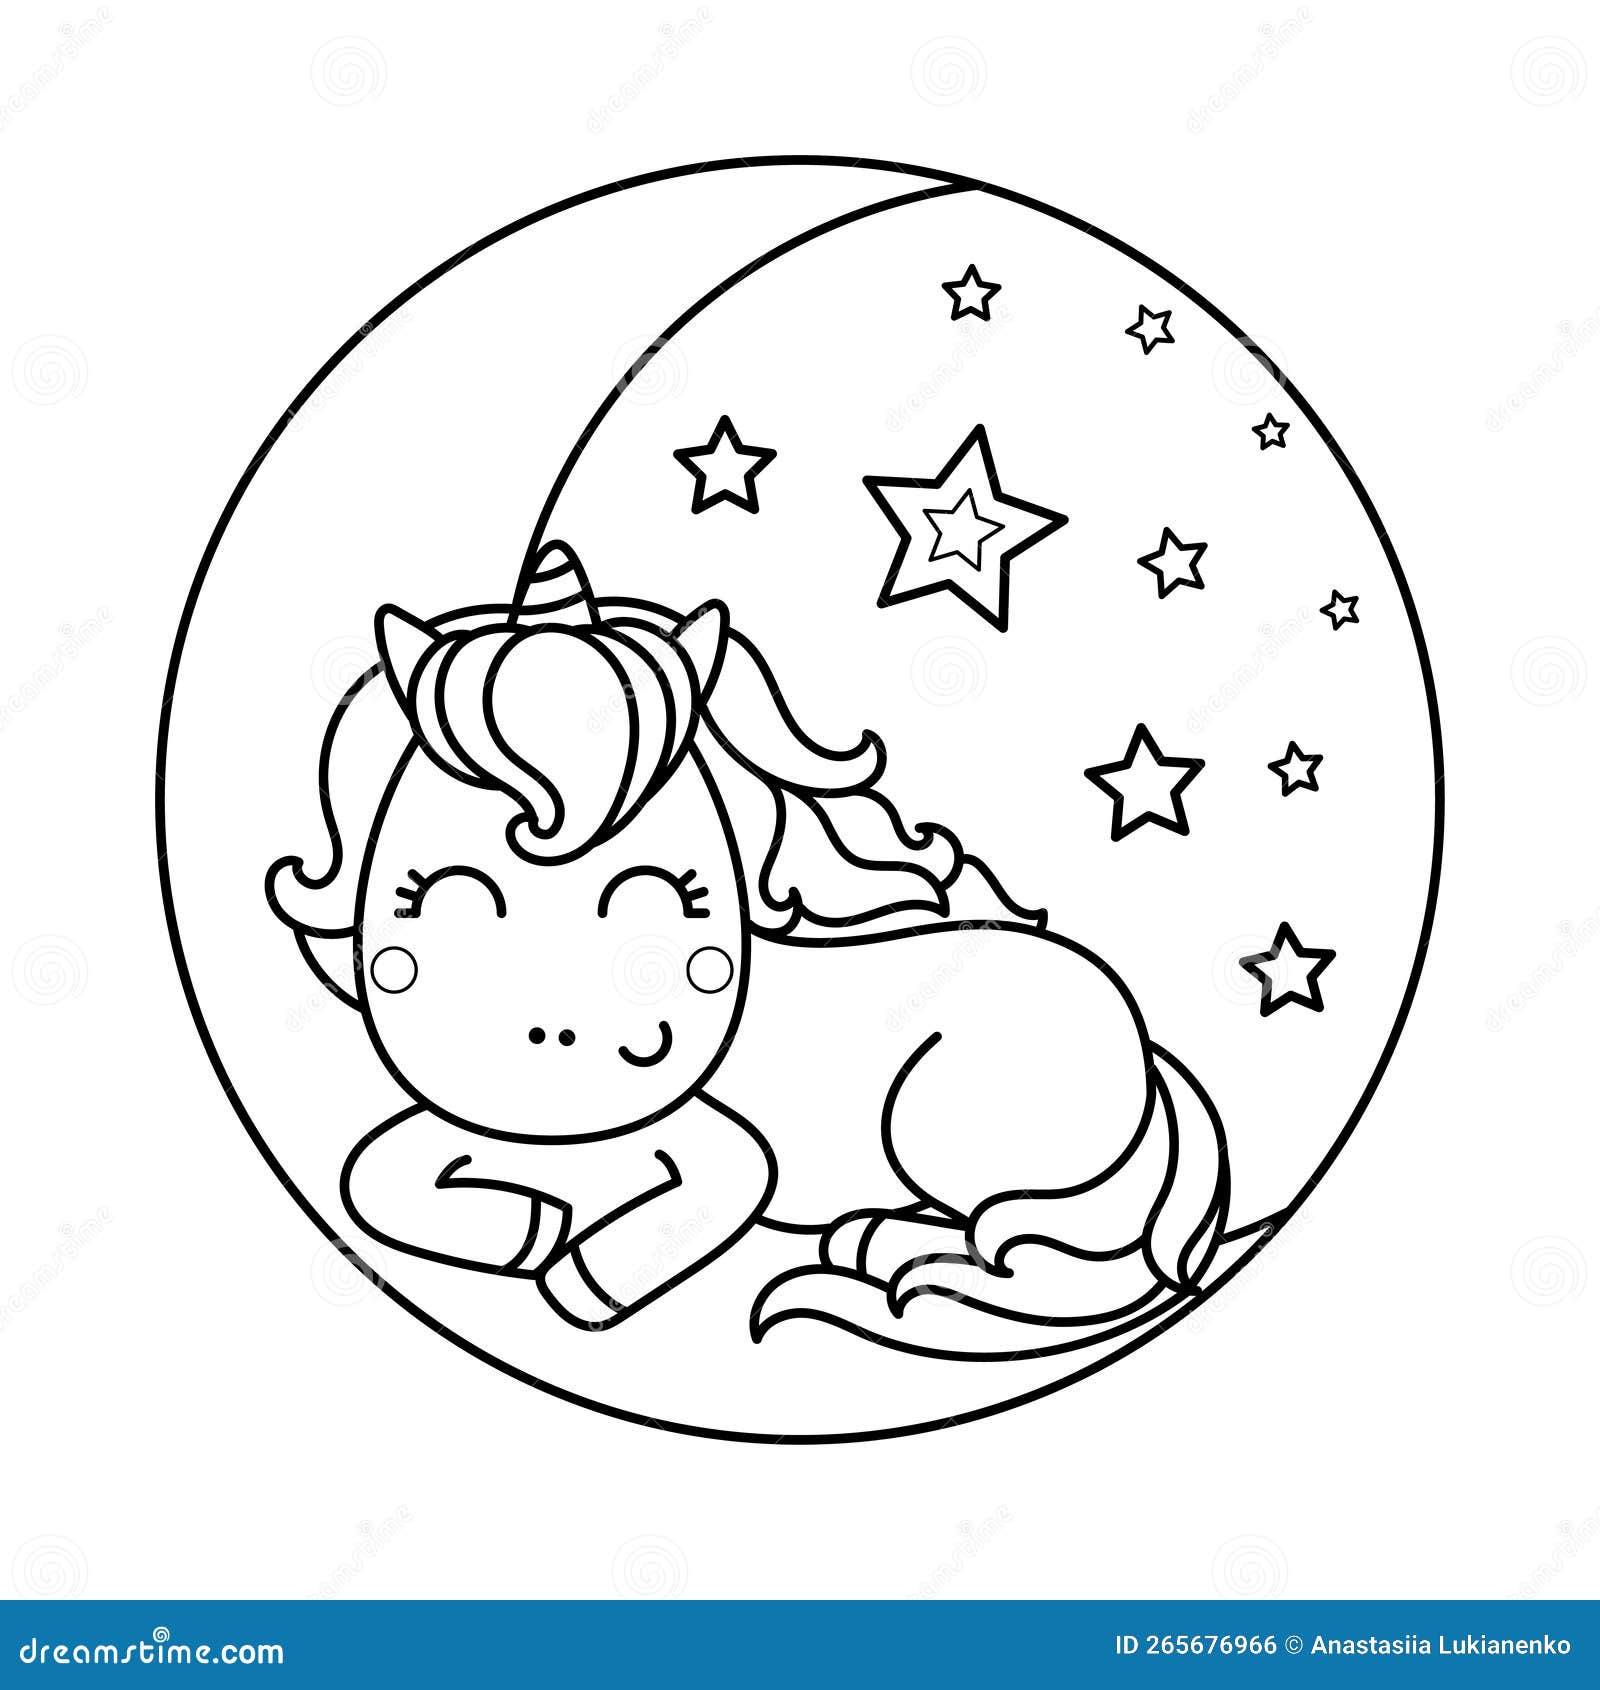 Desenho de unicórnio fofo e animal kawaii da lua